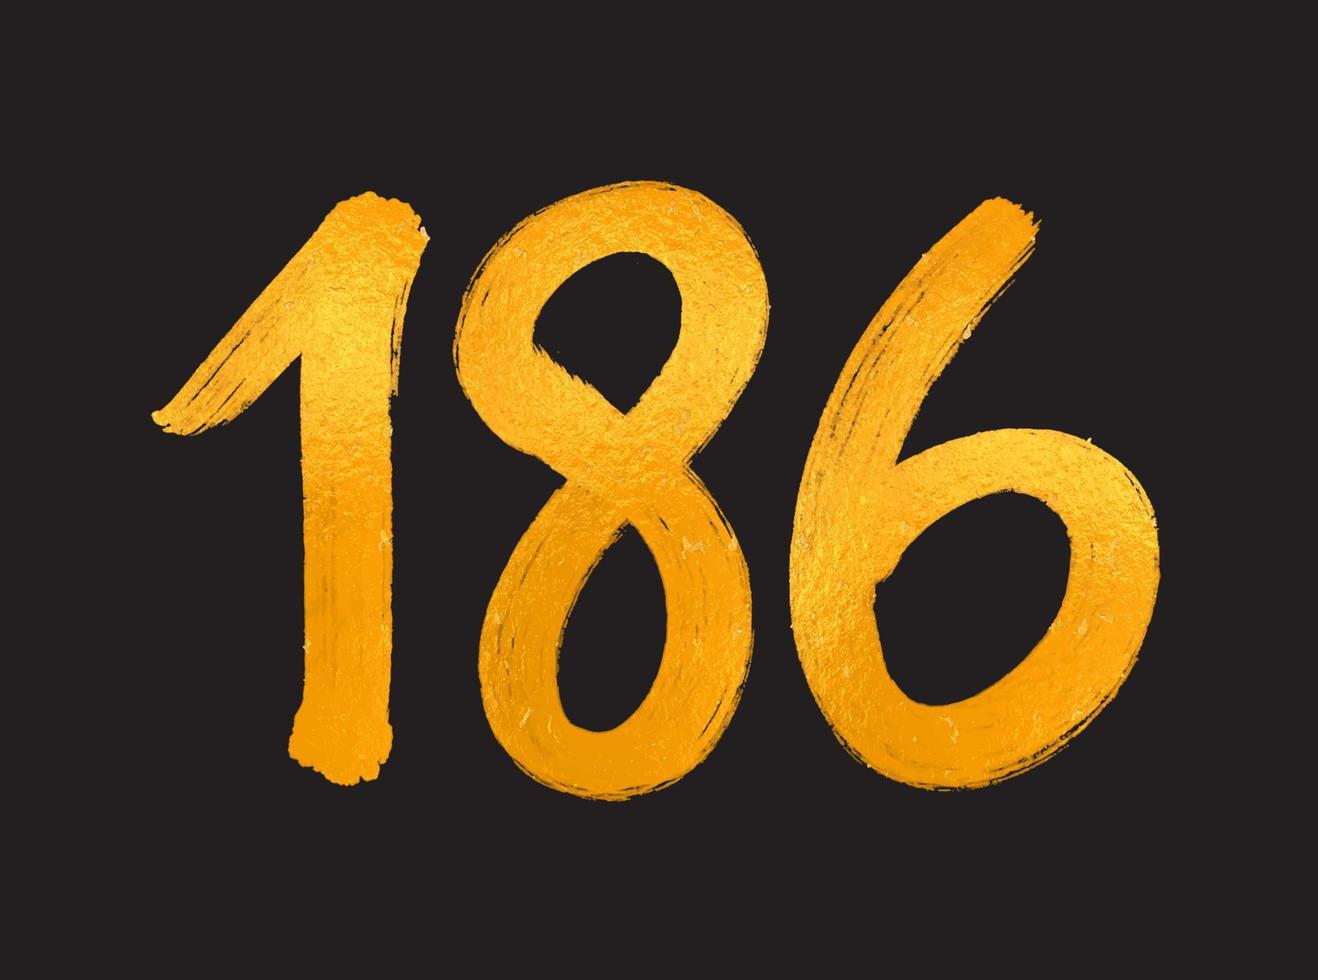 186 numero logo vettore illustrazione, 186 anni anniversario celebrazione vettore modello, 186° compleanno, oro lettering numeri spazzola disegno mano disegnato schizzo, numero logo design per Stampa, t camicia